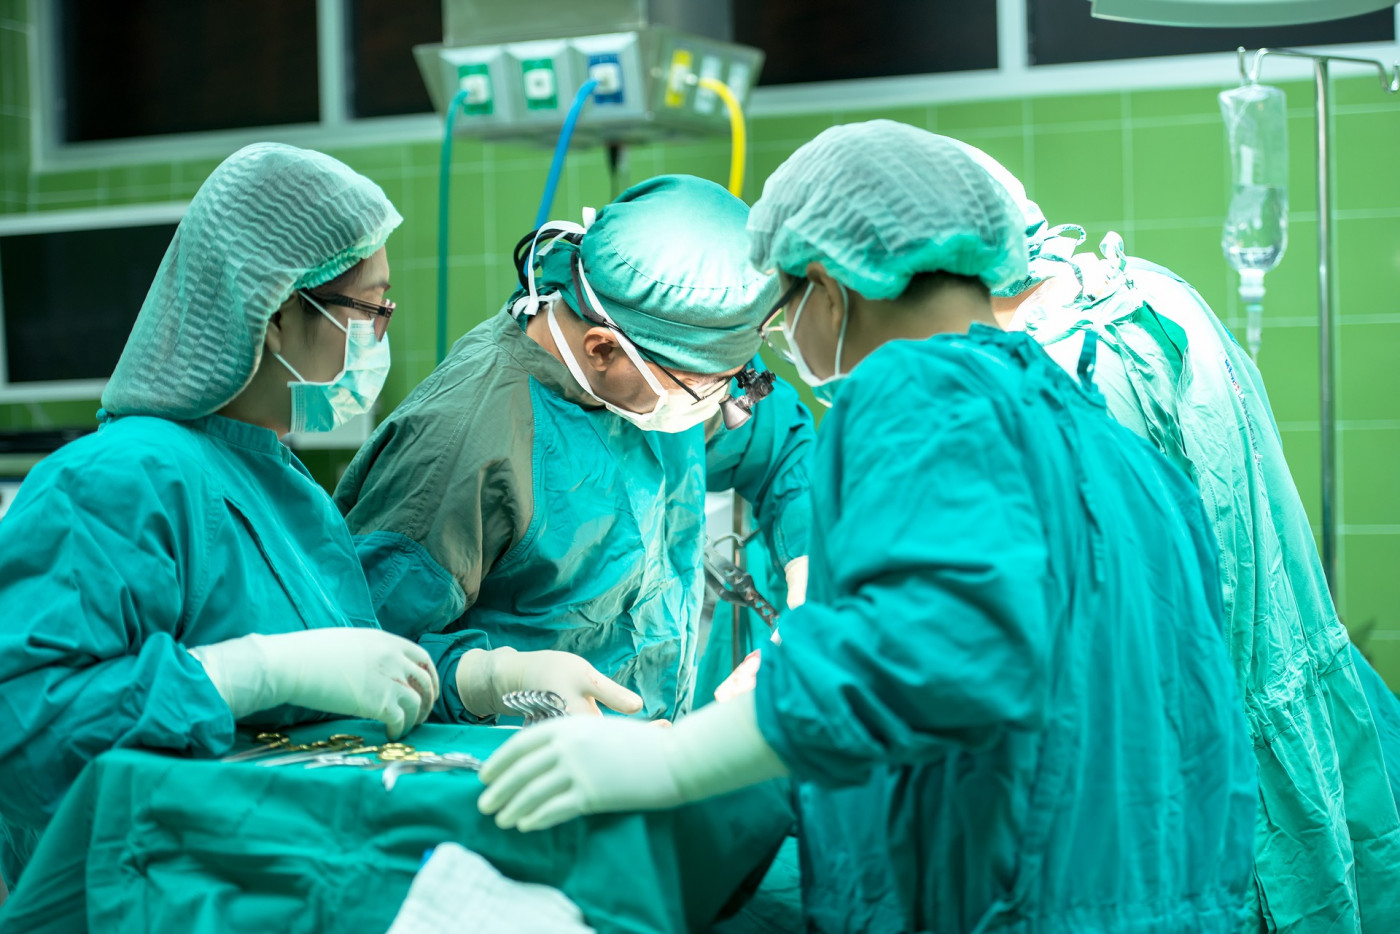 Três profissionais vestindo roupas de ala cirúrgica